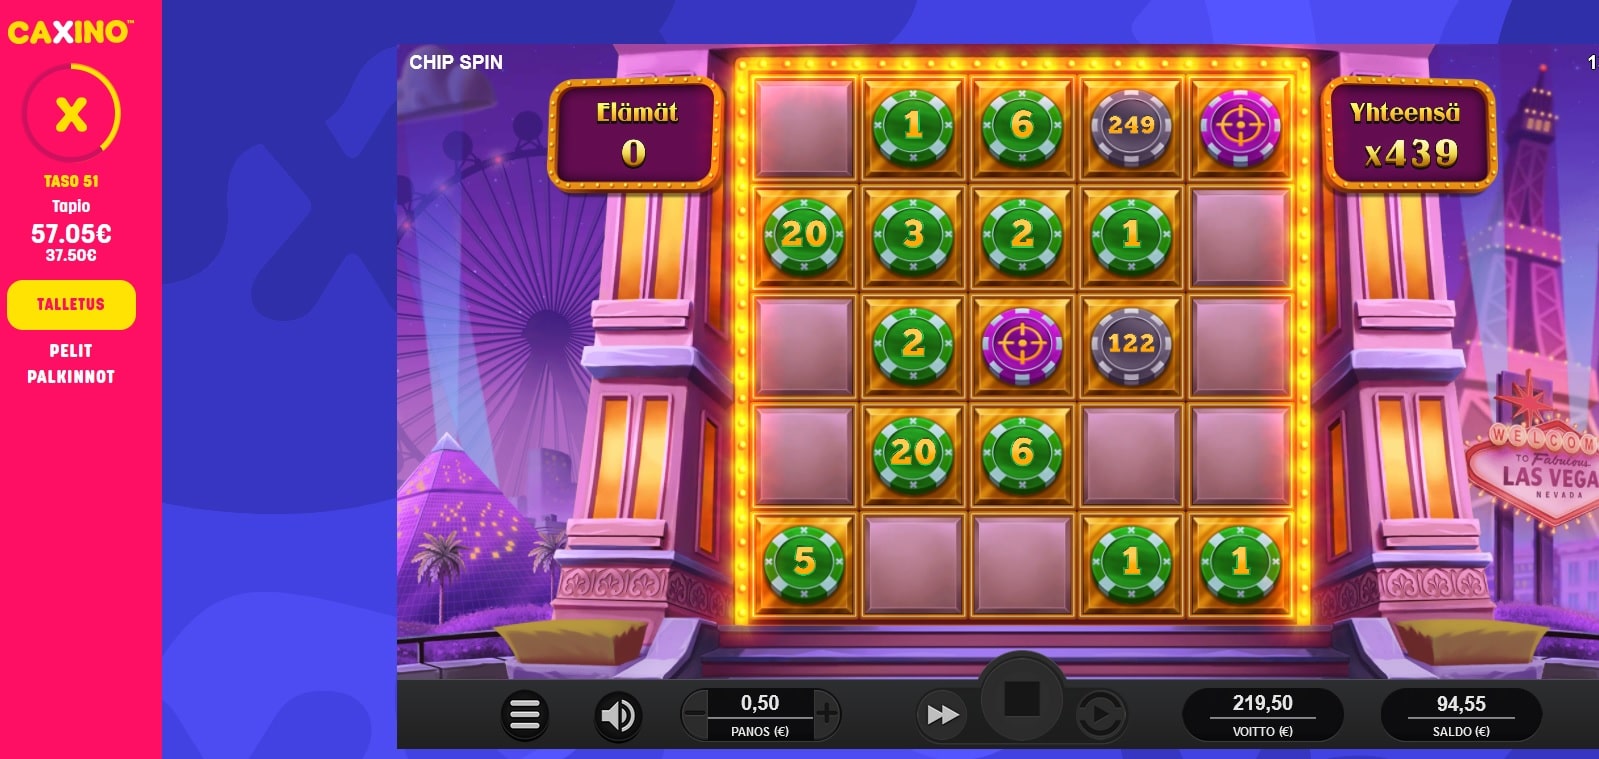 Chip Spin Casino win picture by Mrmork666 26.10.2021 219.50e 439X Caxino